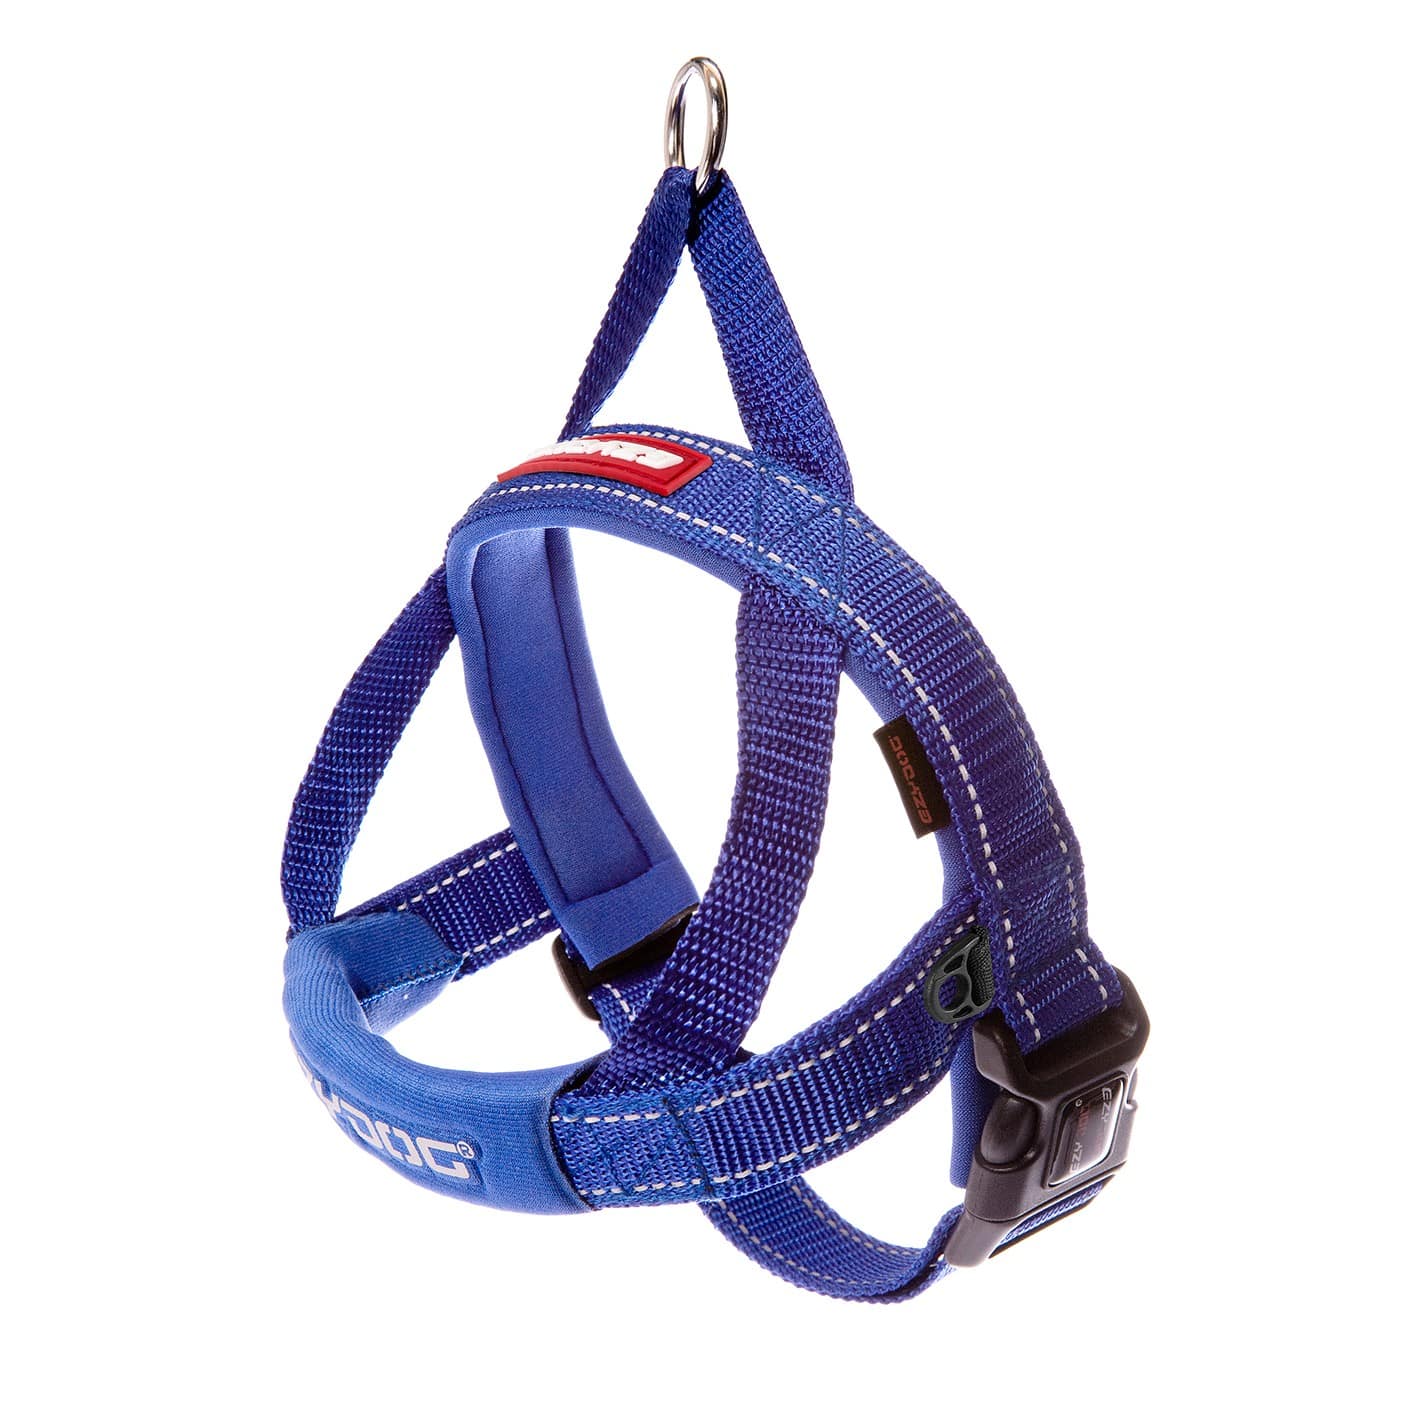 EZYDOG Quick fit Harness | Sure 4 Pets1417 x 1417